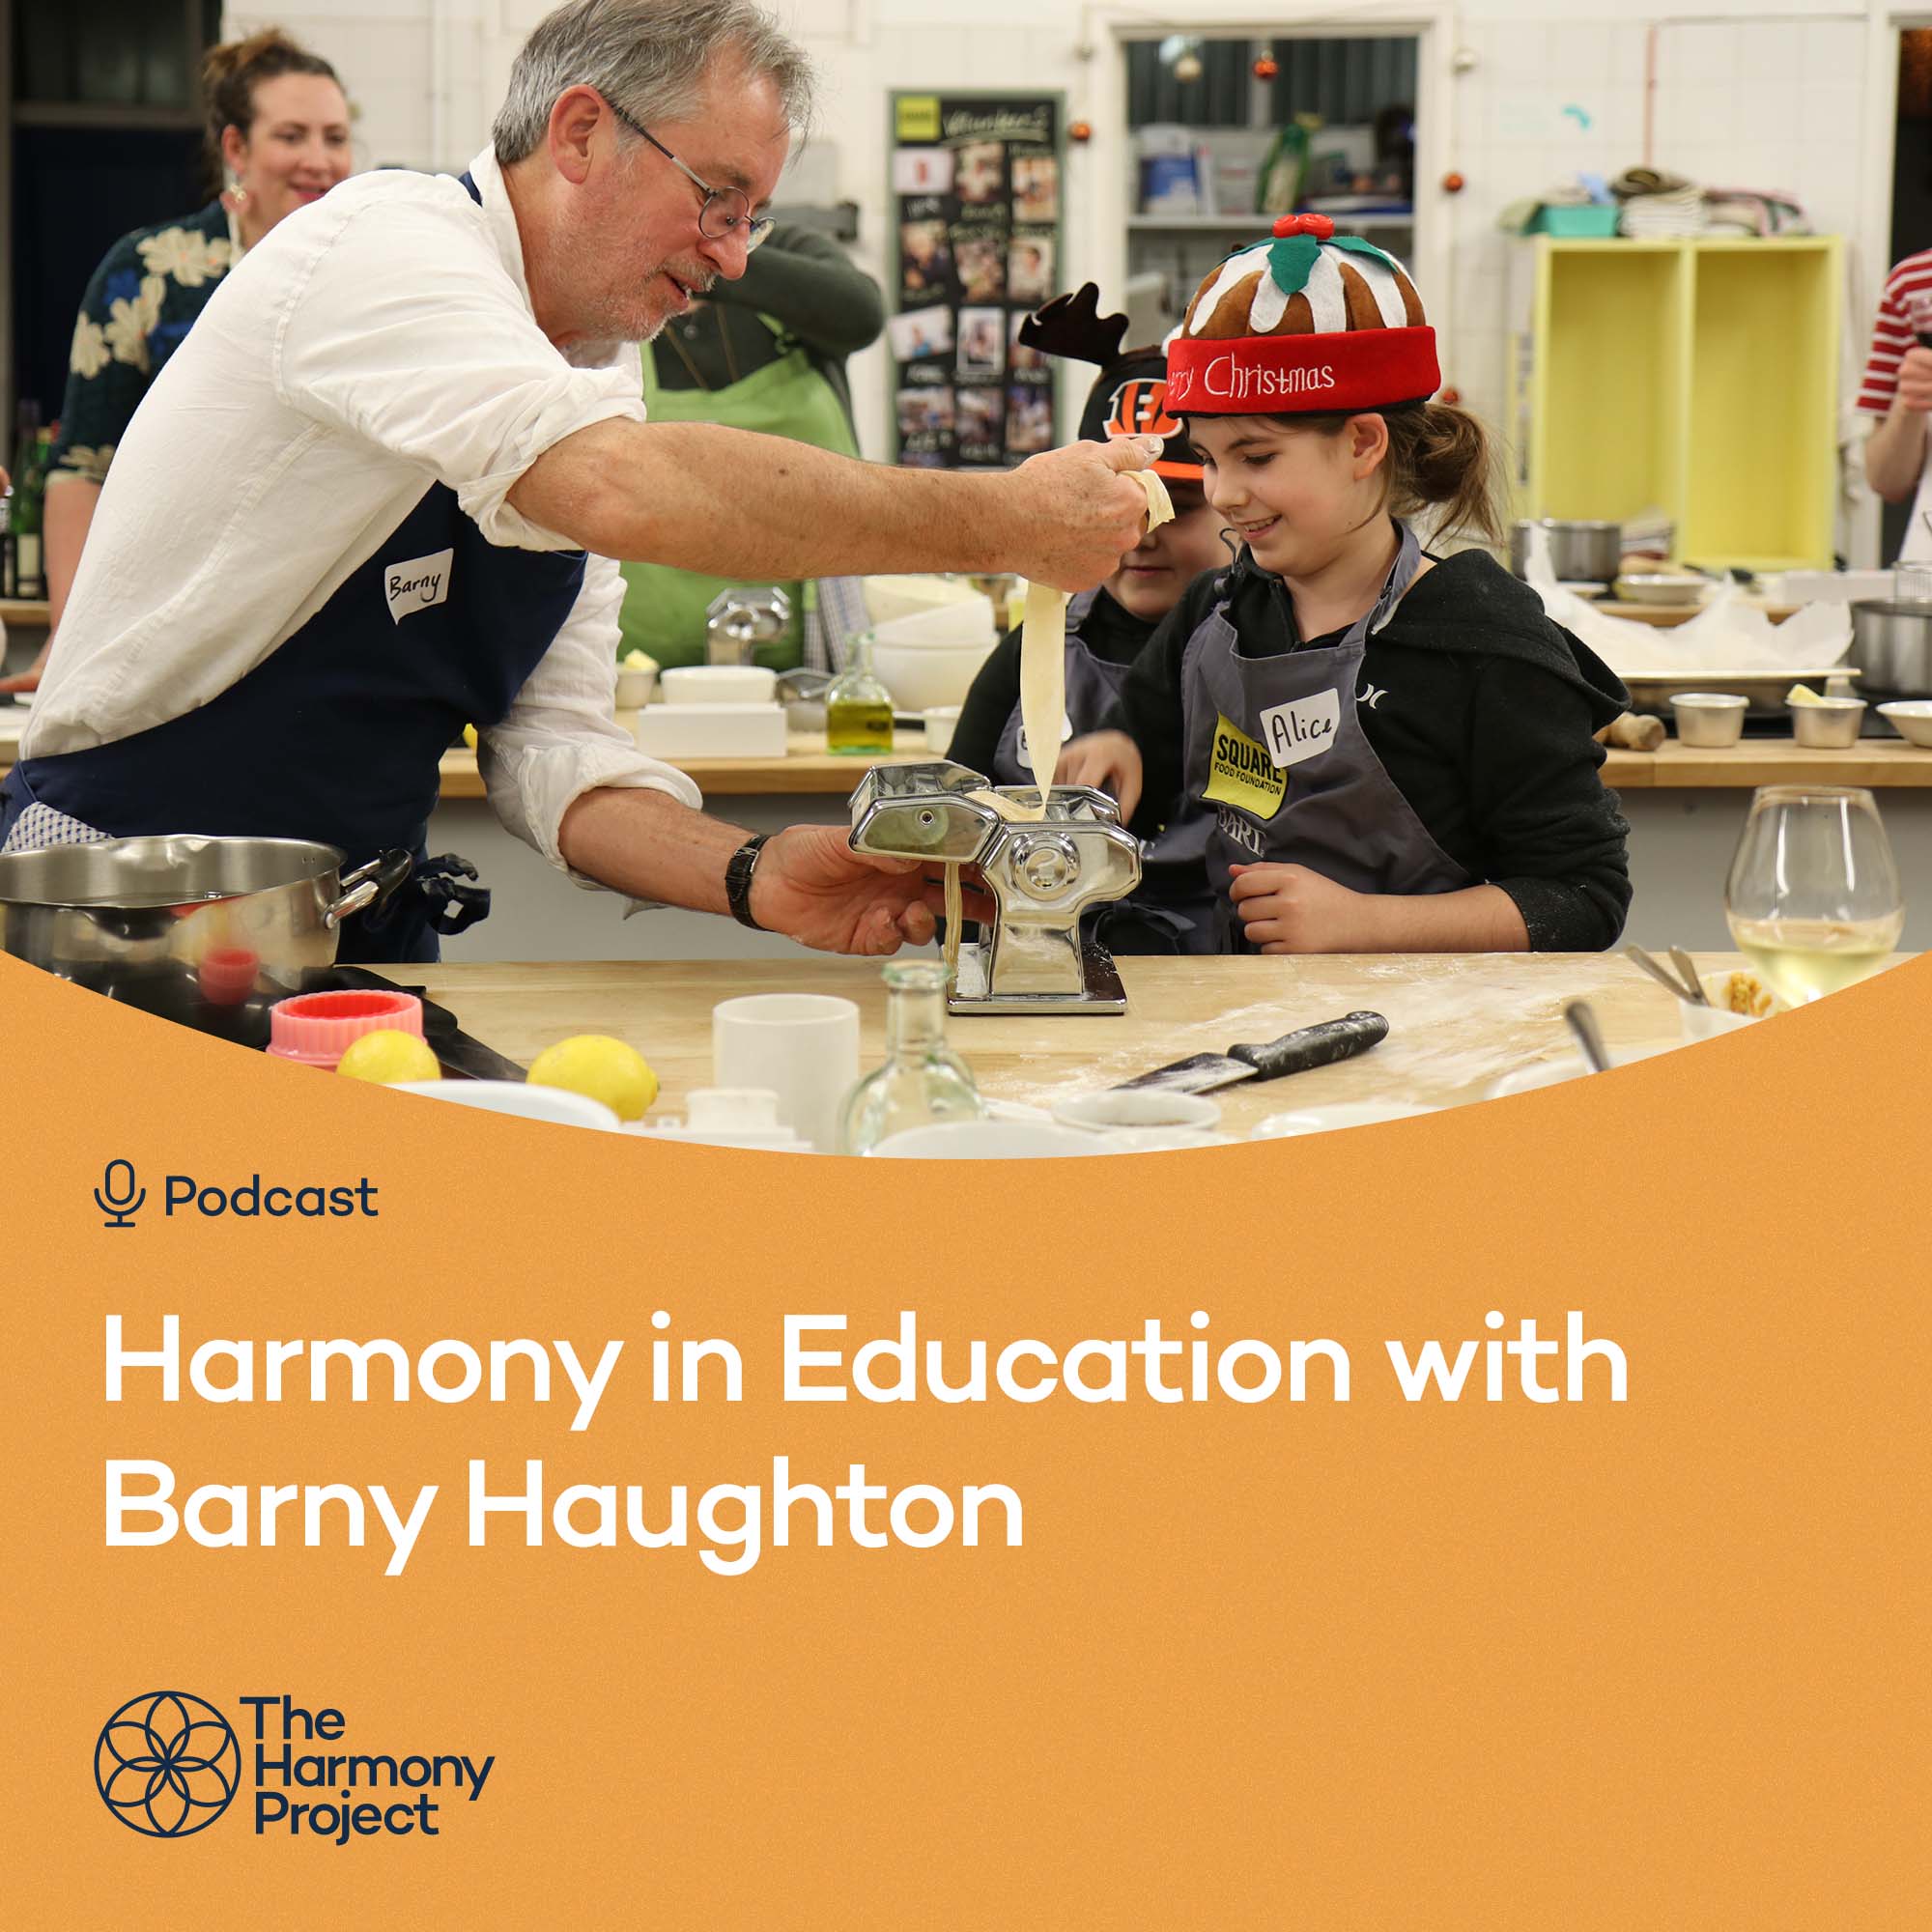 Harmony in Education with Barny Haughton